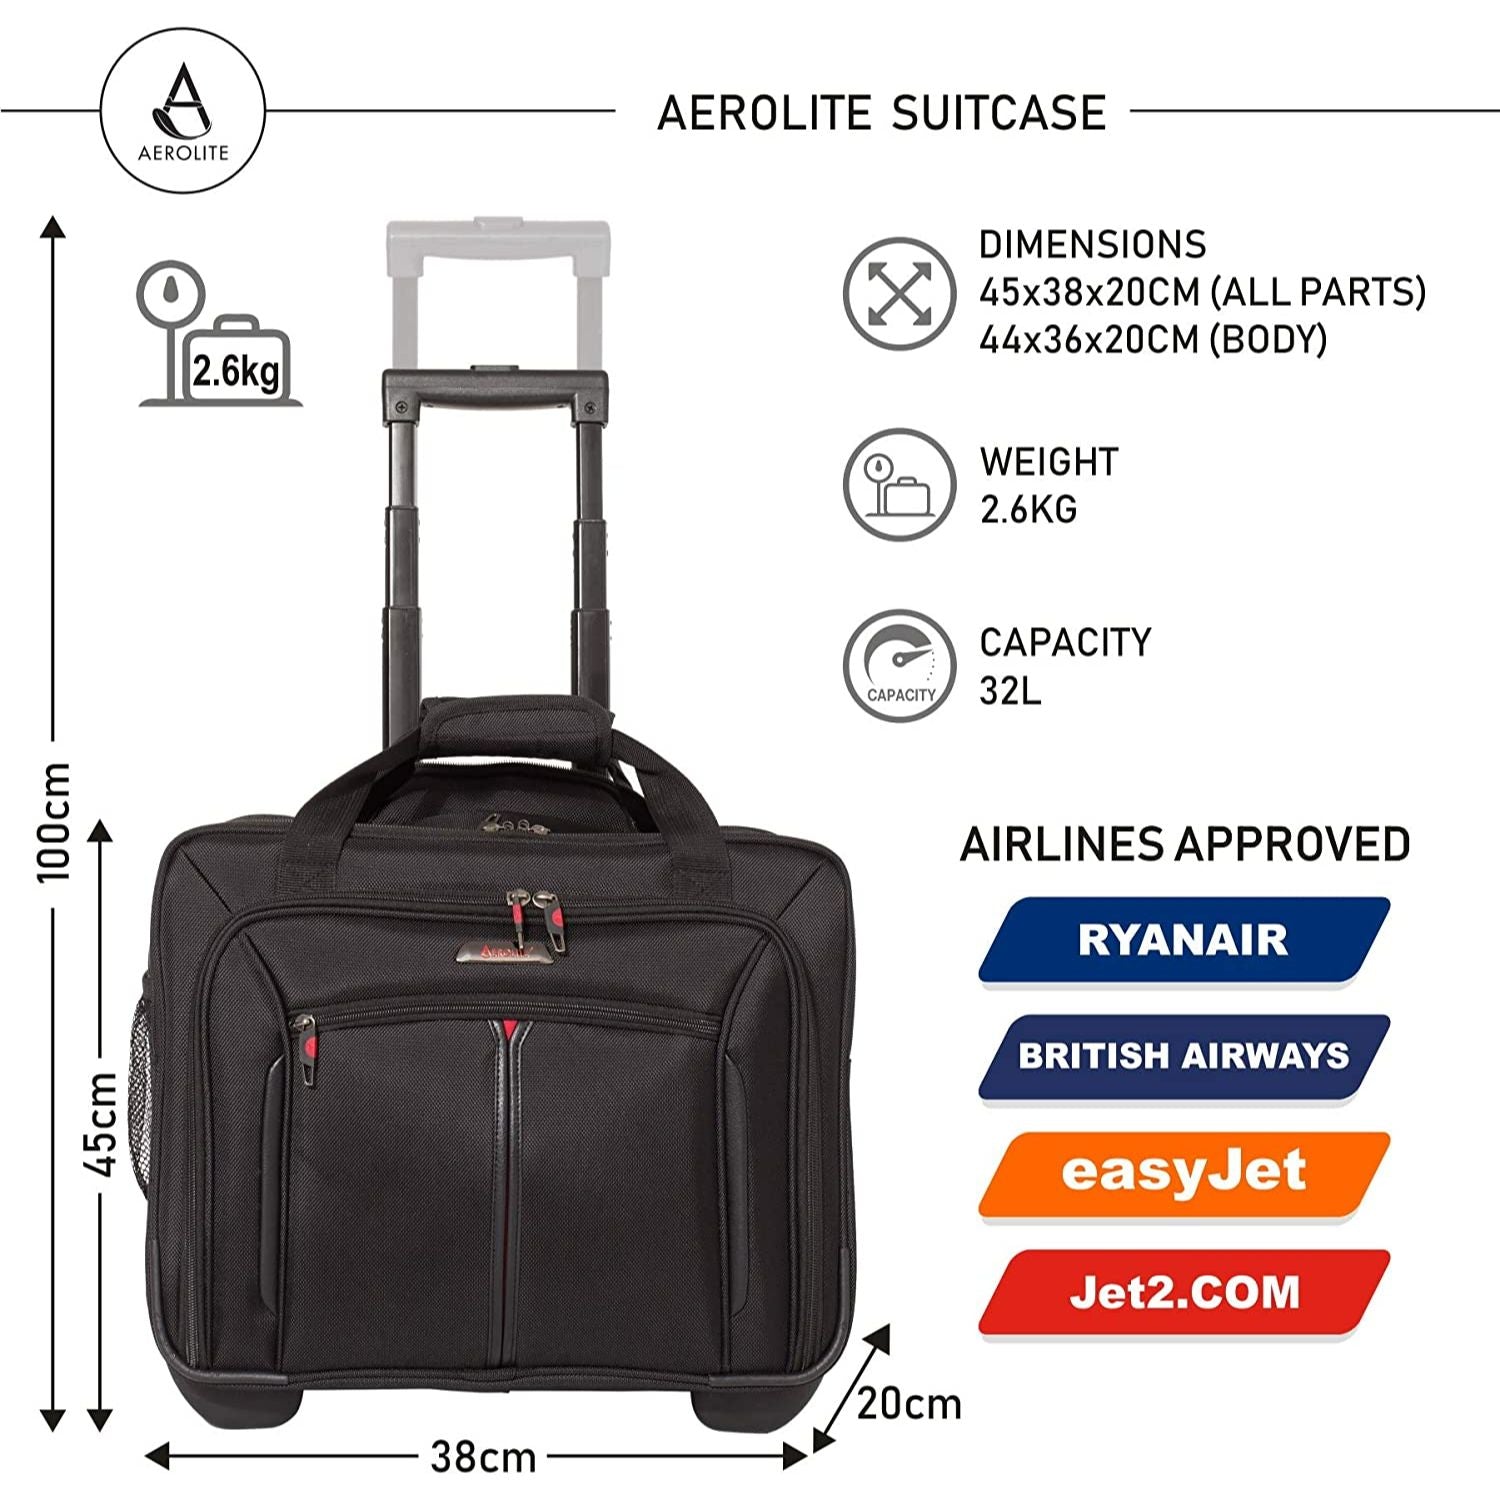 Aerolite Laptoptasche Aktentaschen hülle mit Taschen zur Aufbewahrung von Zubehör, für Laptops bis zu 15,6 Zoll, passend für Lufthansa, Eurowings, Ryanair, easyJet und viele mehr, 2 Jahre Garantie - Aerolite DE